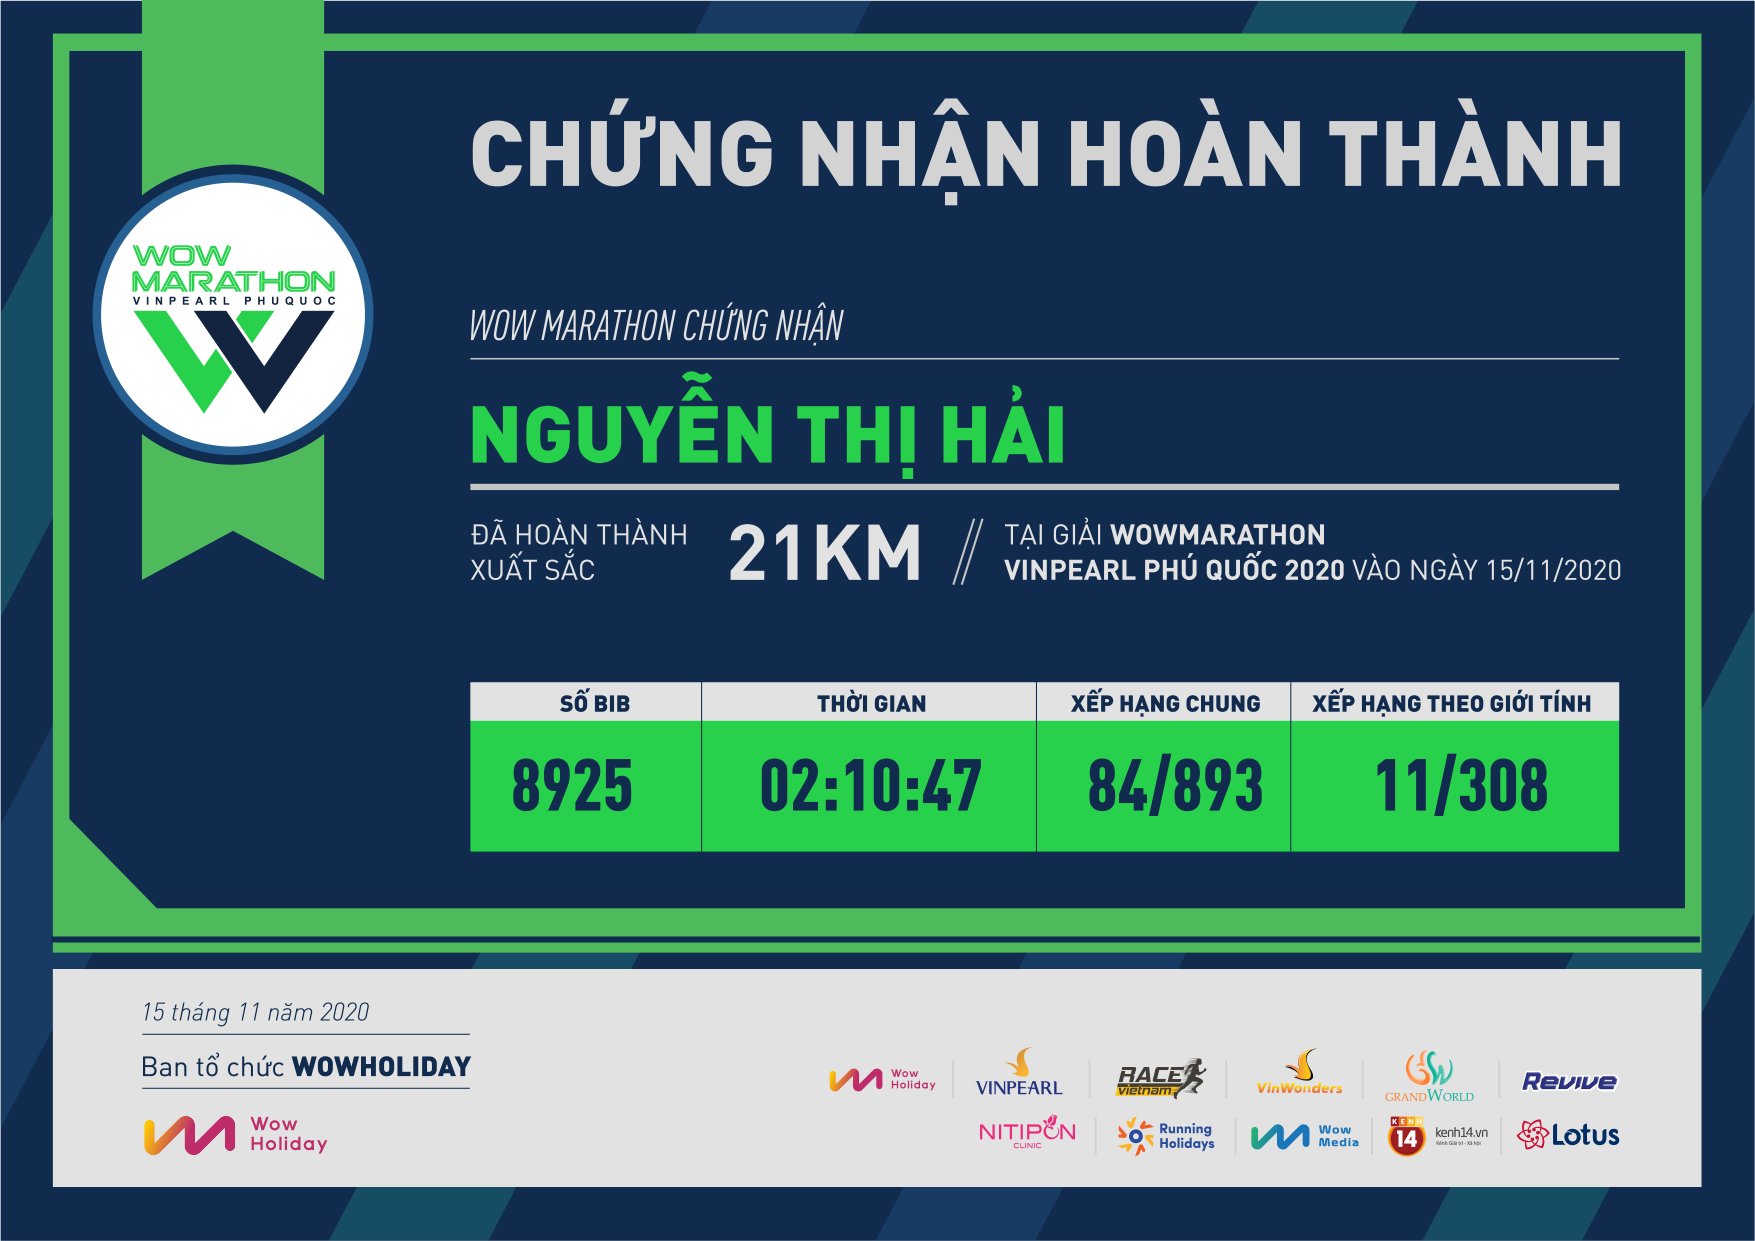 8925 - Nguyễn thị hải